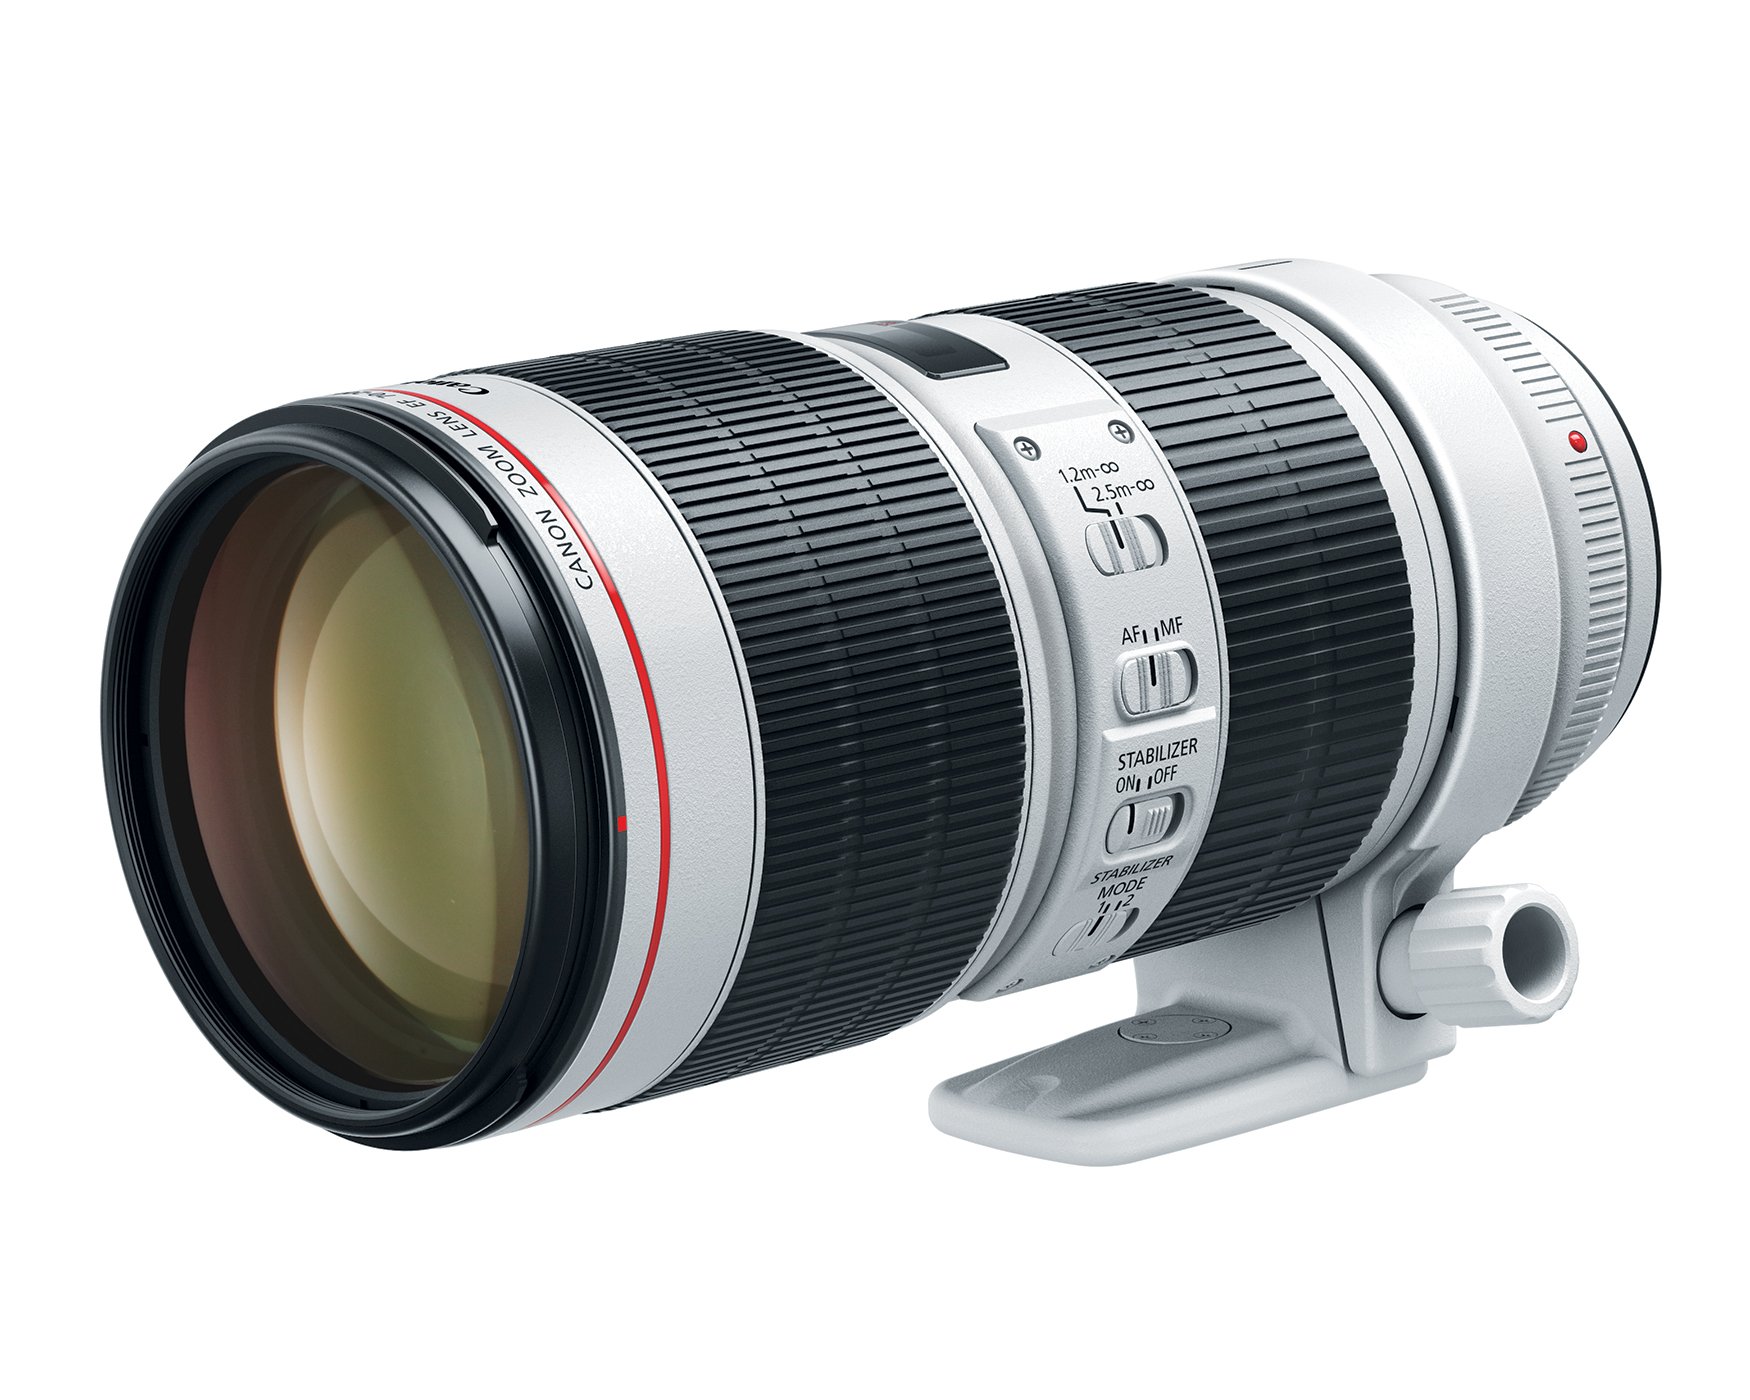 Canon EF 70-200mm f/2.8L IS III USM Lens for  Digital SLR Cameras, White - 3044C002